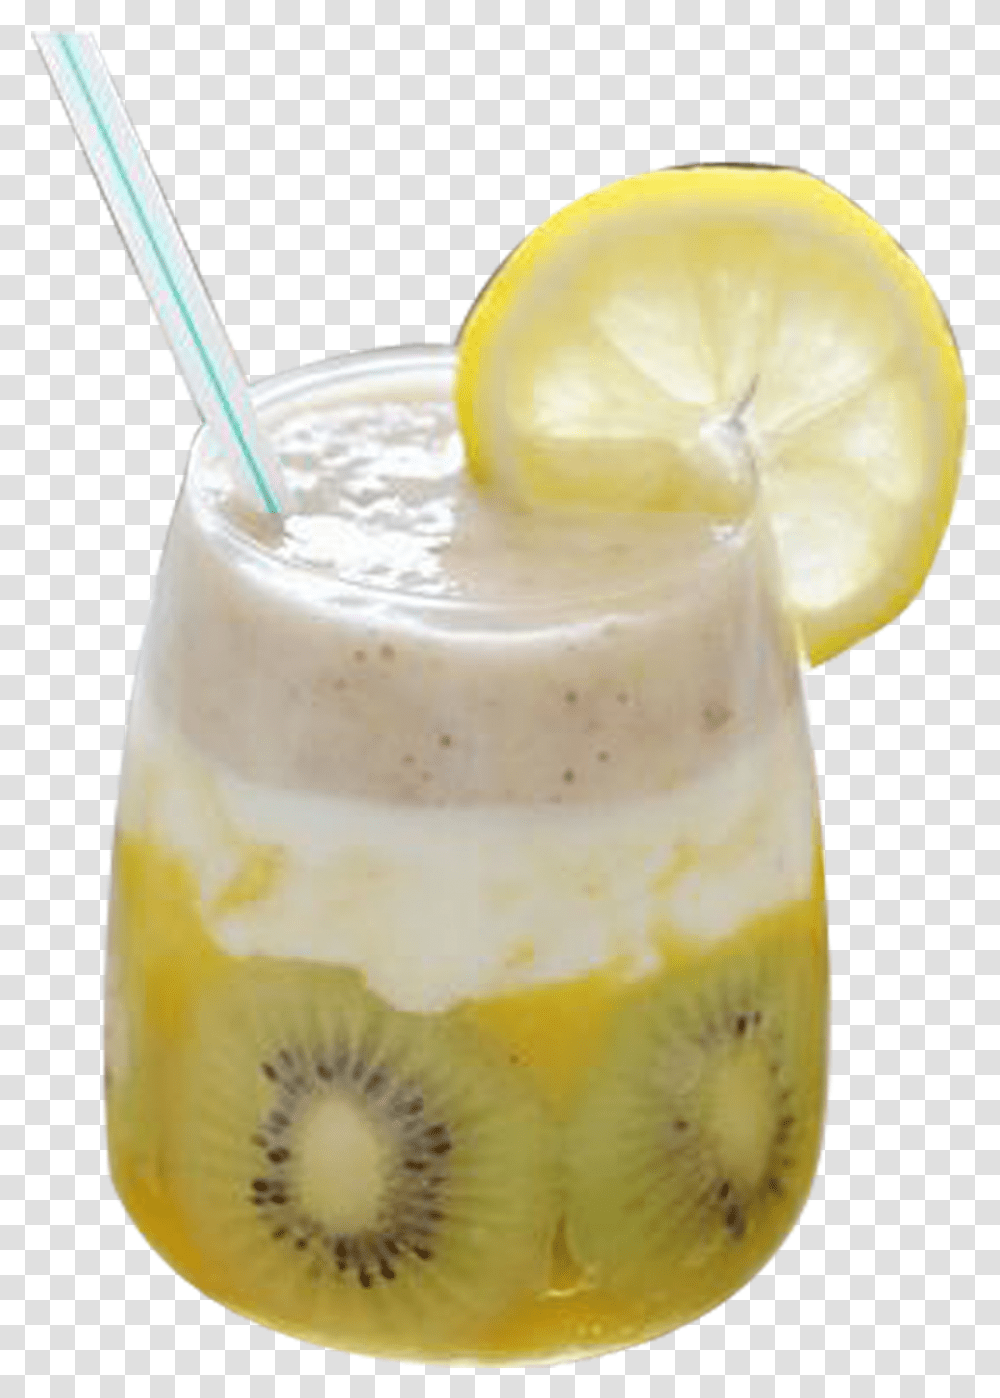 Download Lemonade Black Portable Network Graphics, Juice, Beverage, Drink, Smoothie Transparent Png